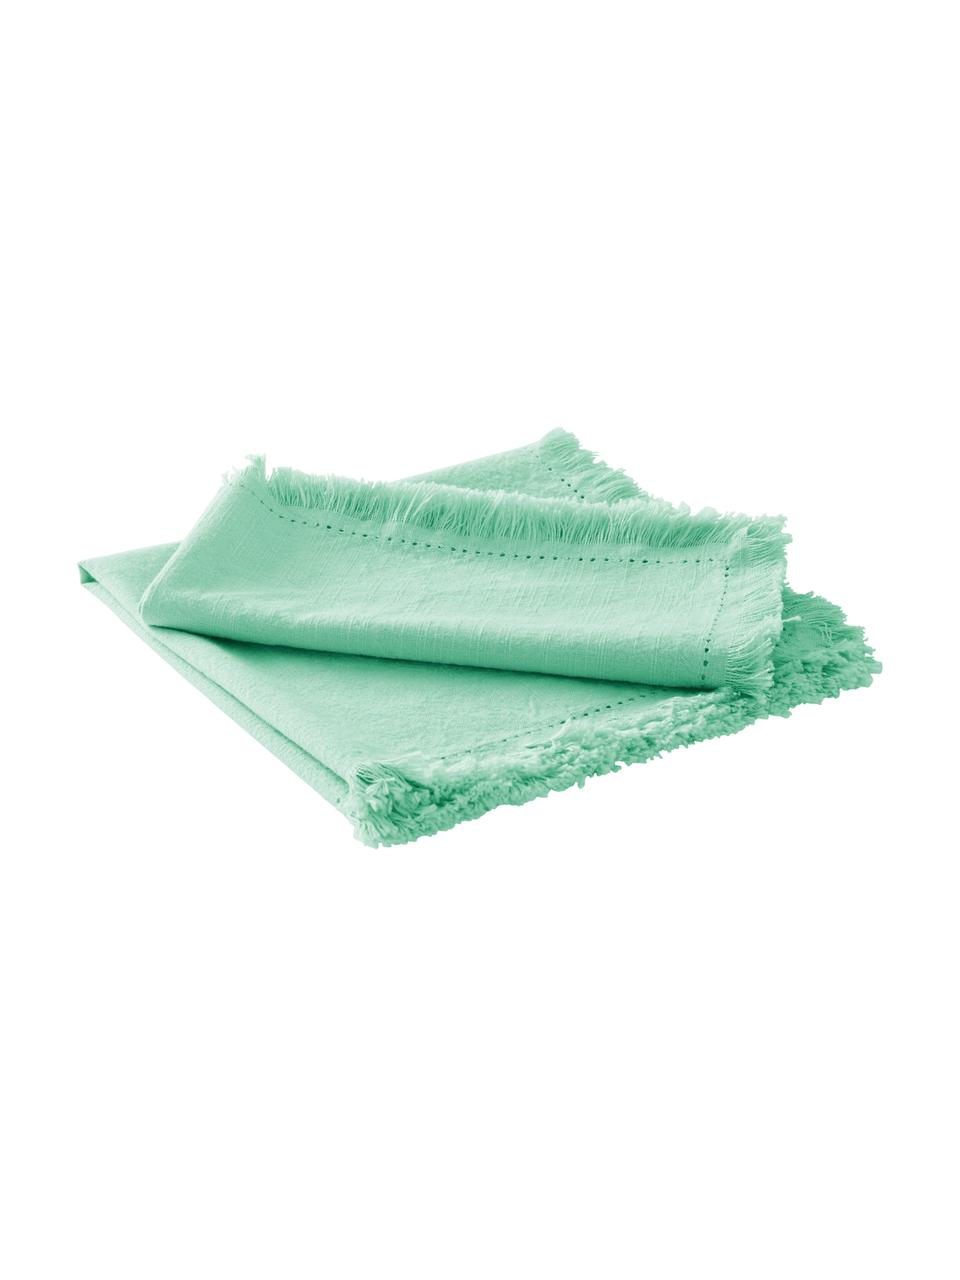 Serviettes de table en coton vert menthe Hilma, 2 pièces, Vert menthe